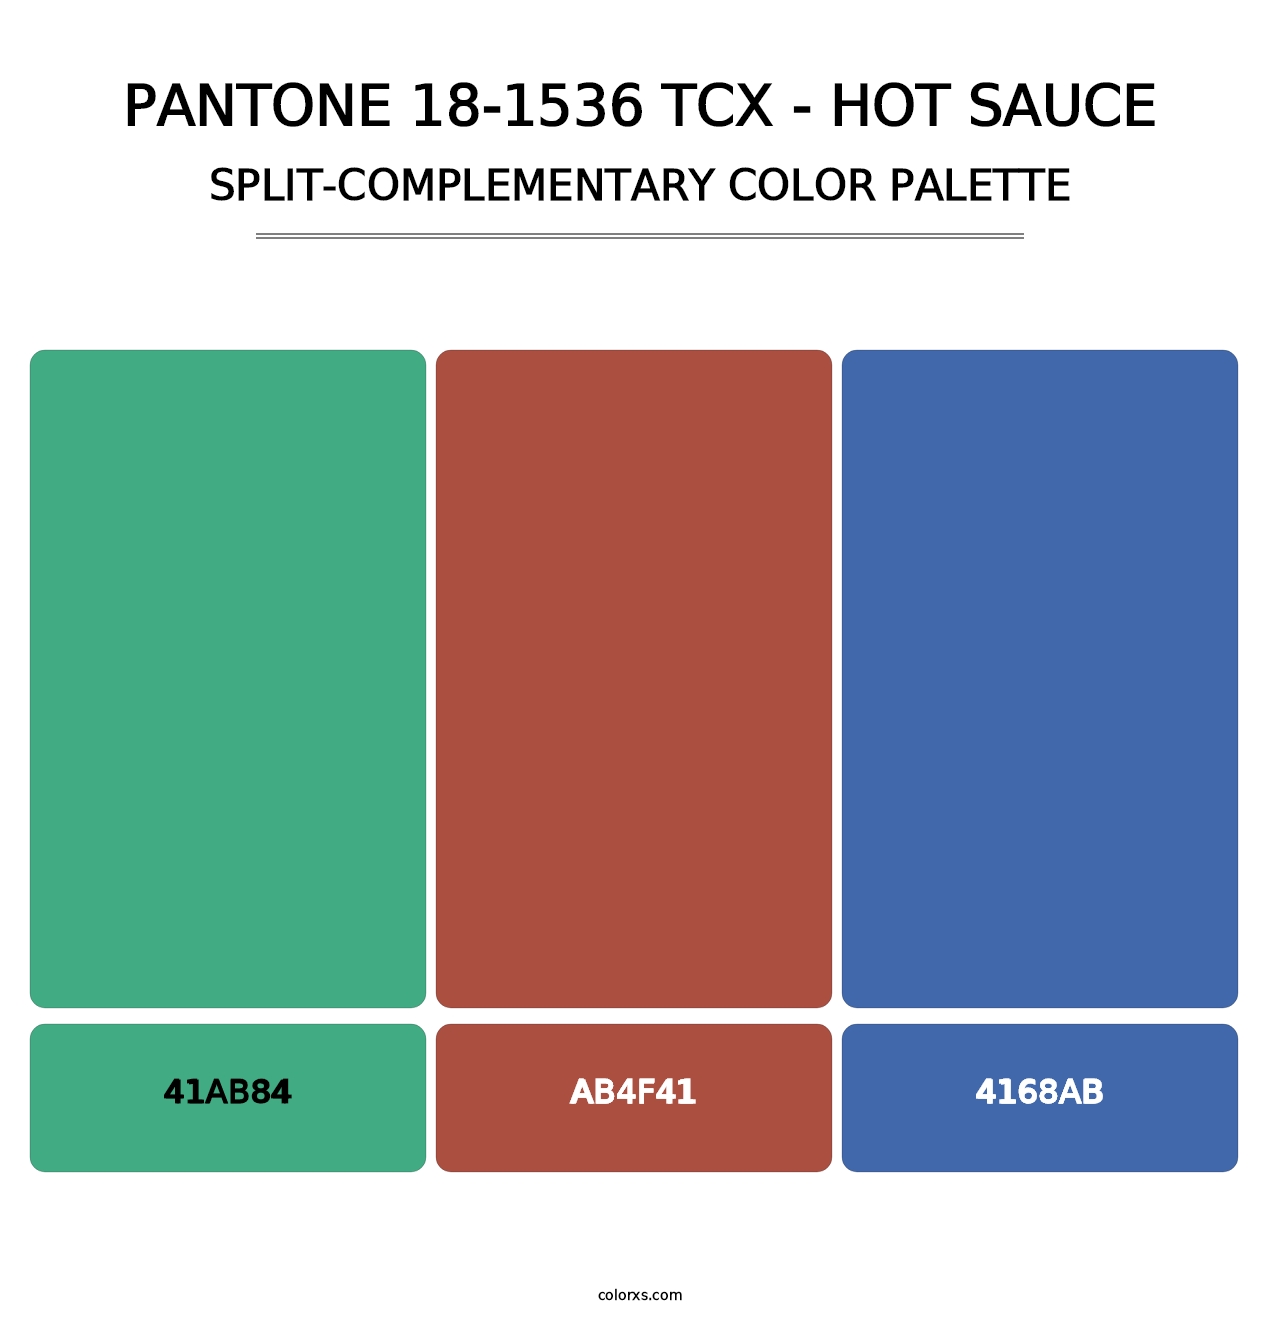 PANTONE 18-1536 TCX - Hot Sauce - Split-Complementary Color Palette